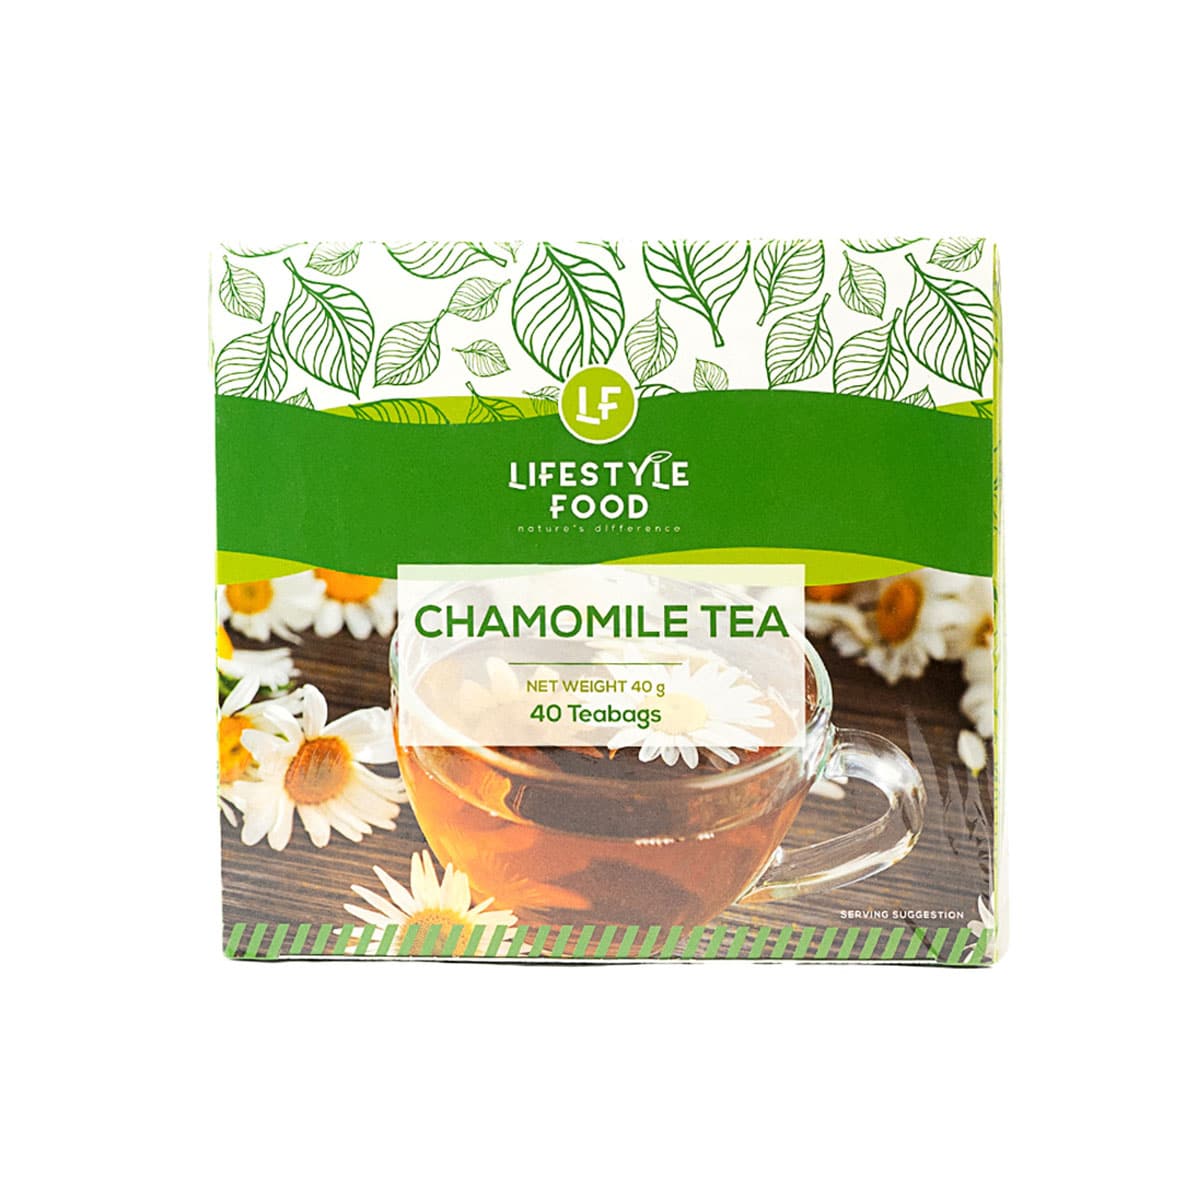 Lifestyle Food Chamomile Tea Value Pack - 40 Teabags